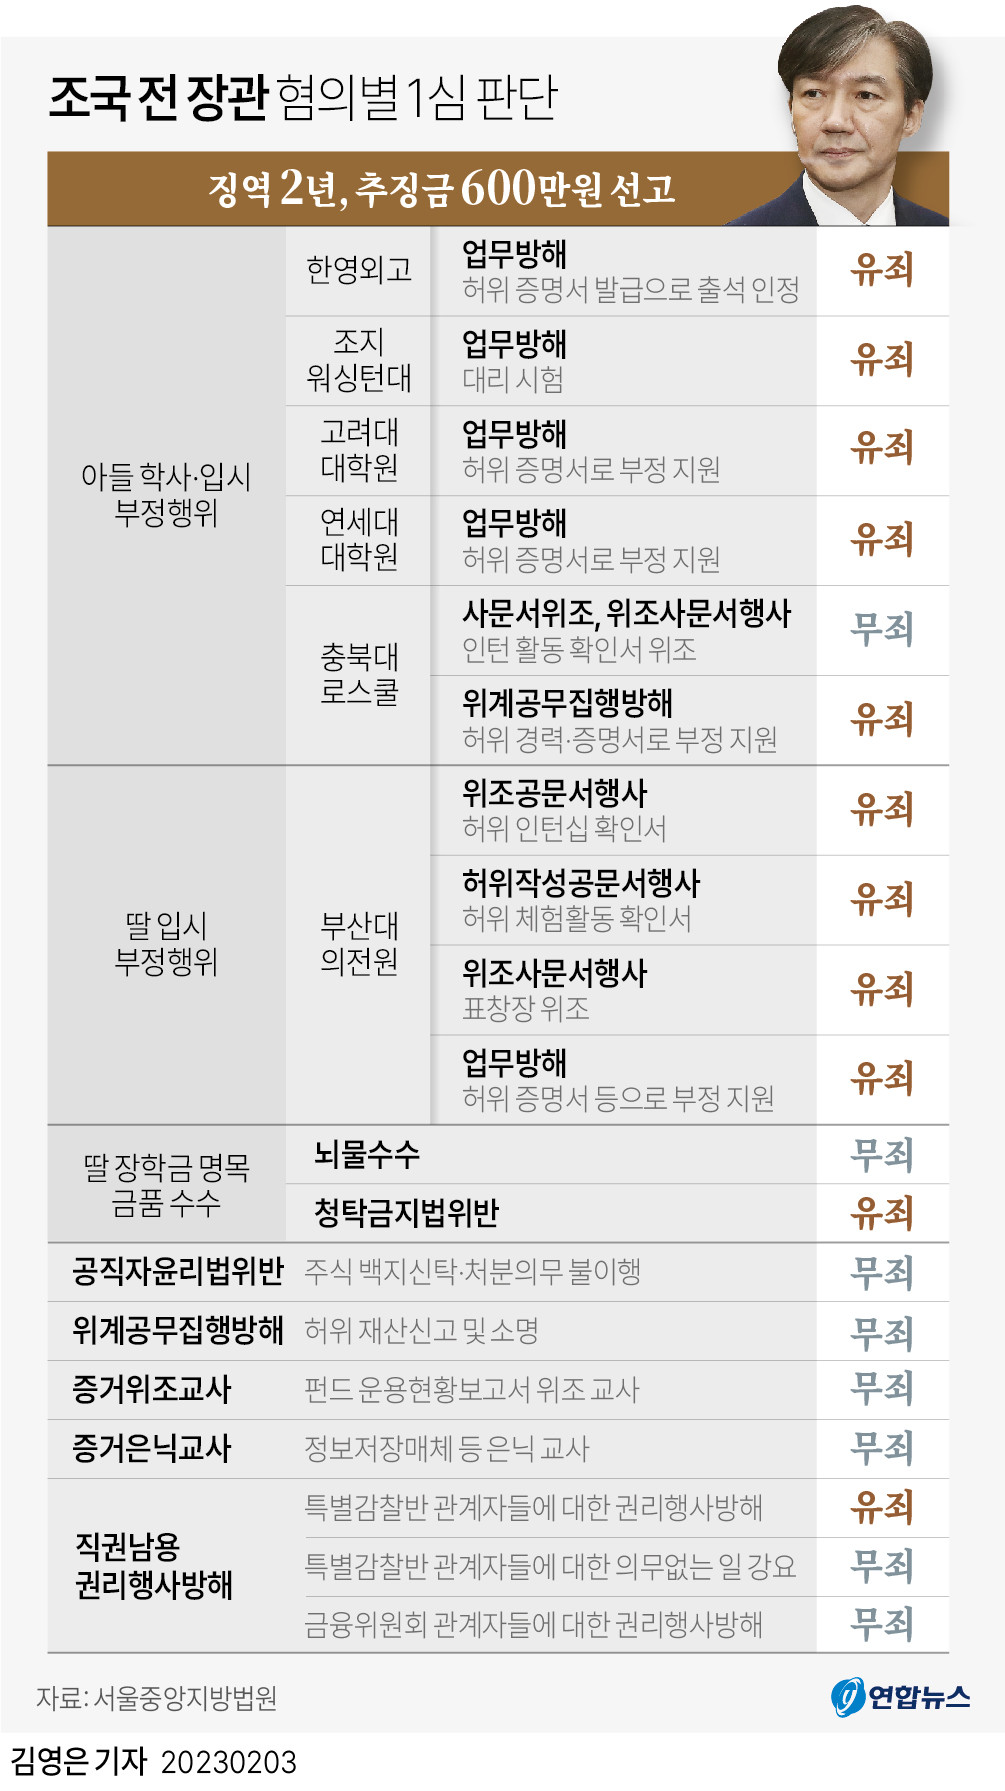 [그래픽] 조국 전 장관 혐의별 1심 판단